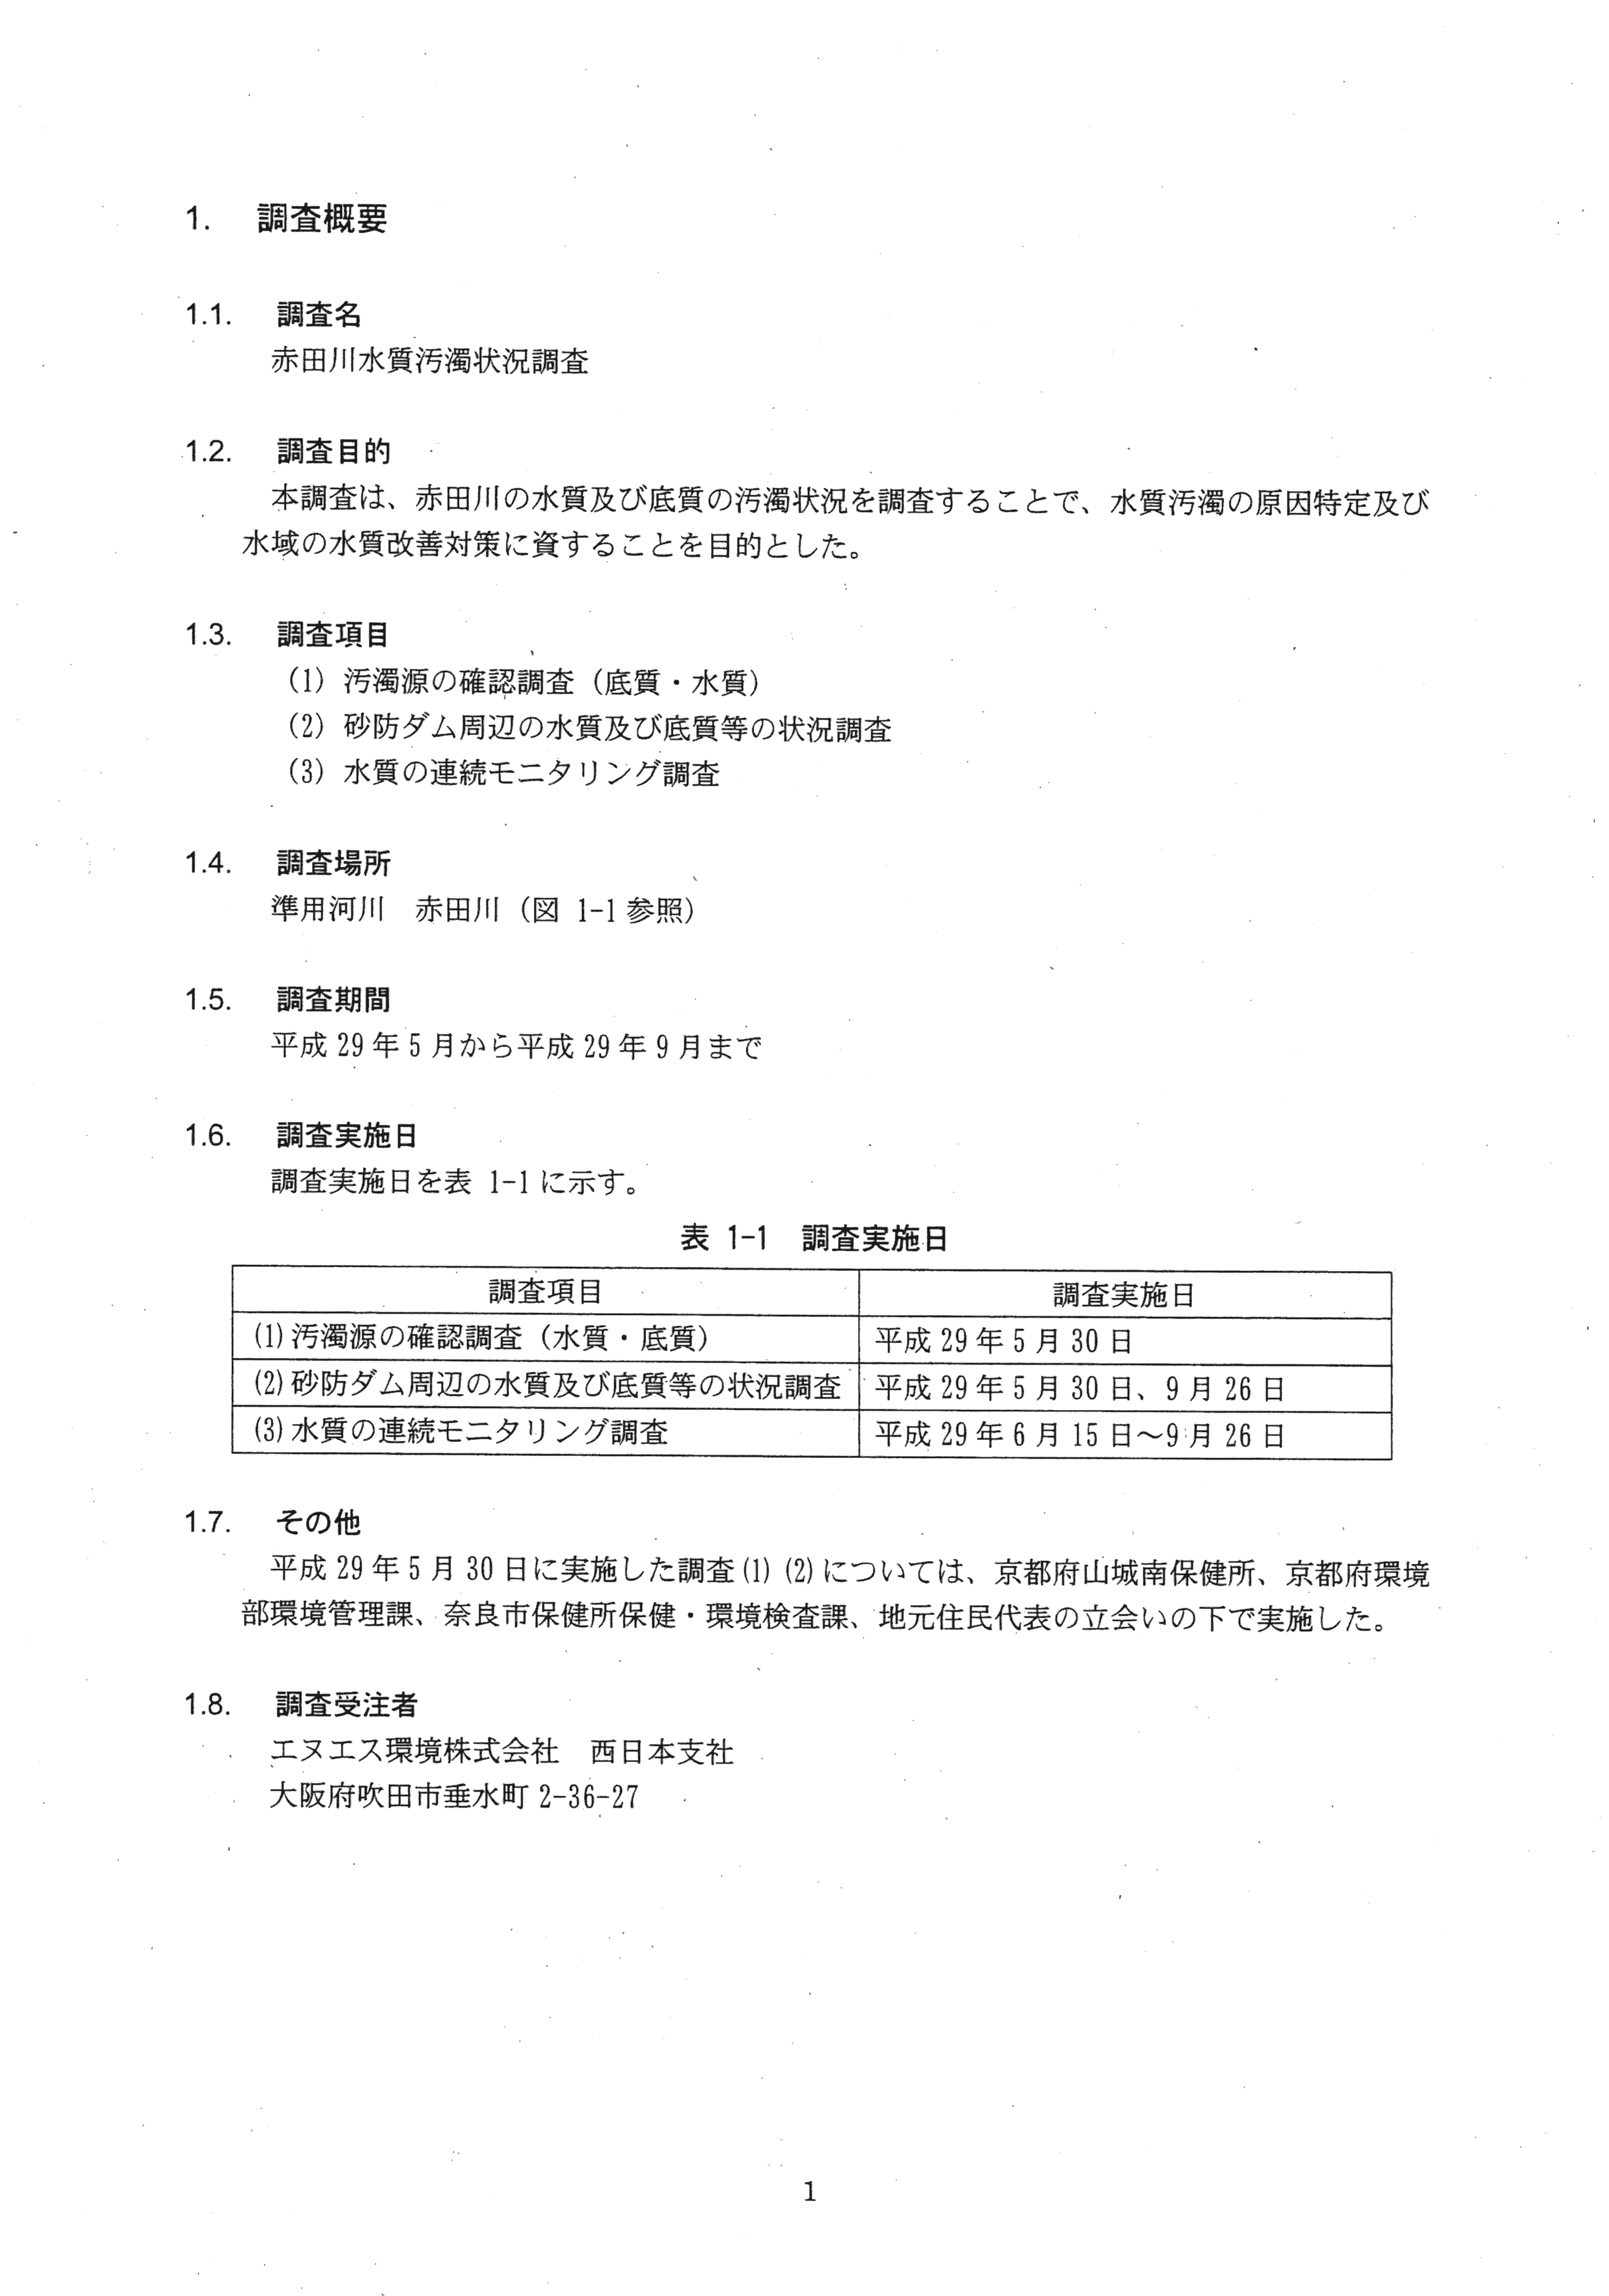 平成29年11月-赤田川水質汚濁状況調査報告書-03